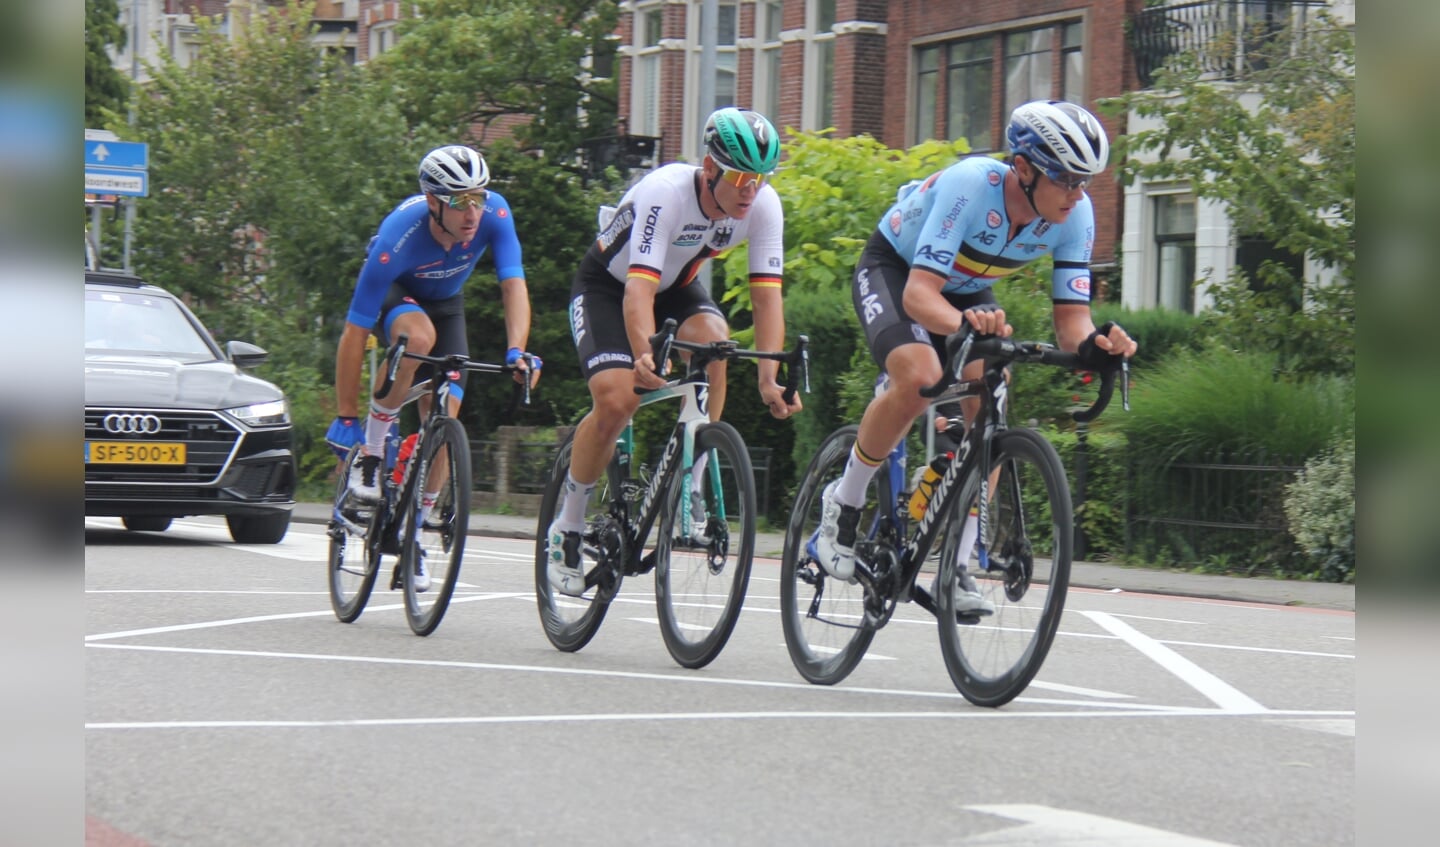 De top drie, met vlnr Elia Viviani (goud), Pascal Ackermann (brons) en Yves Lampaert (zilver).